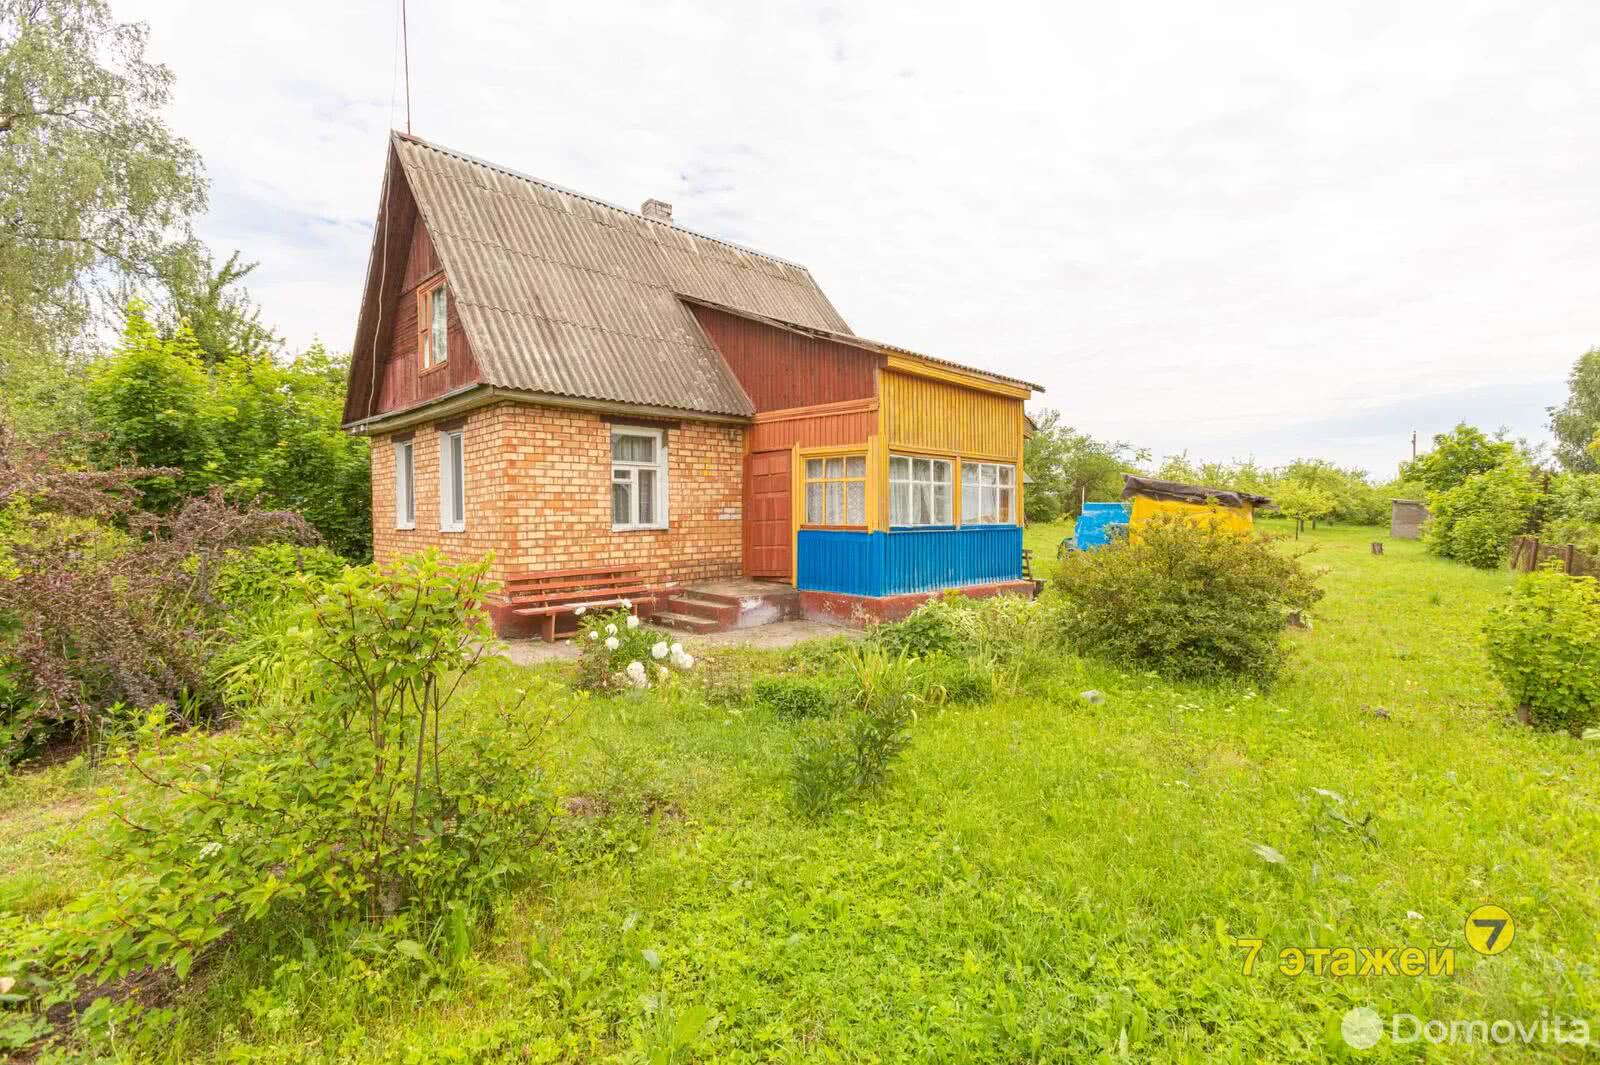 Продать 2-этажный дом в Вишневке, Минская область ул. Вишнёвая, 30000USD, код 637398 - фото 4